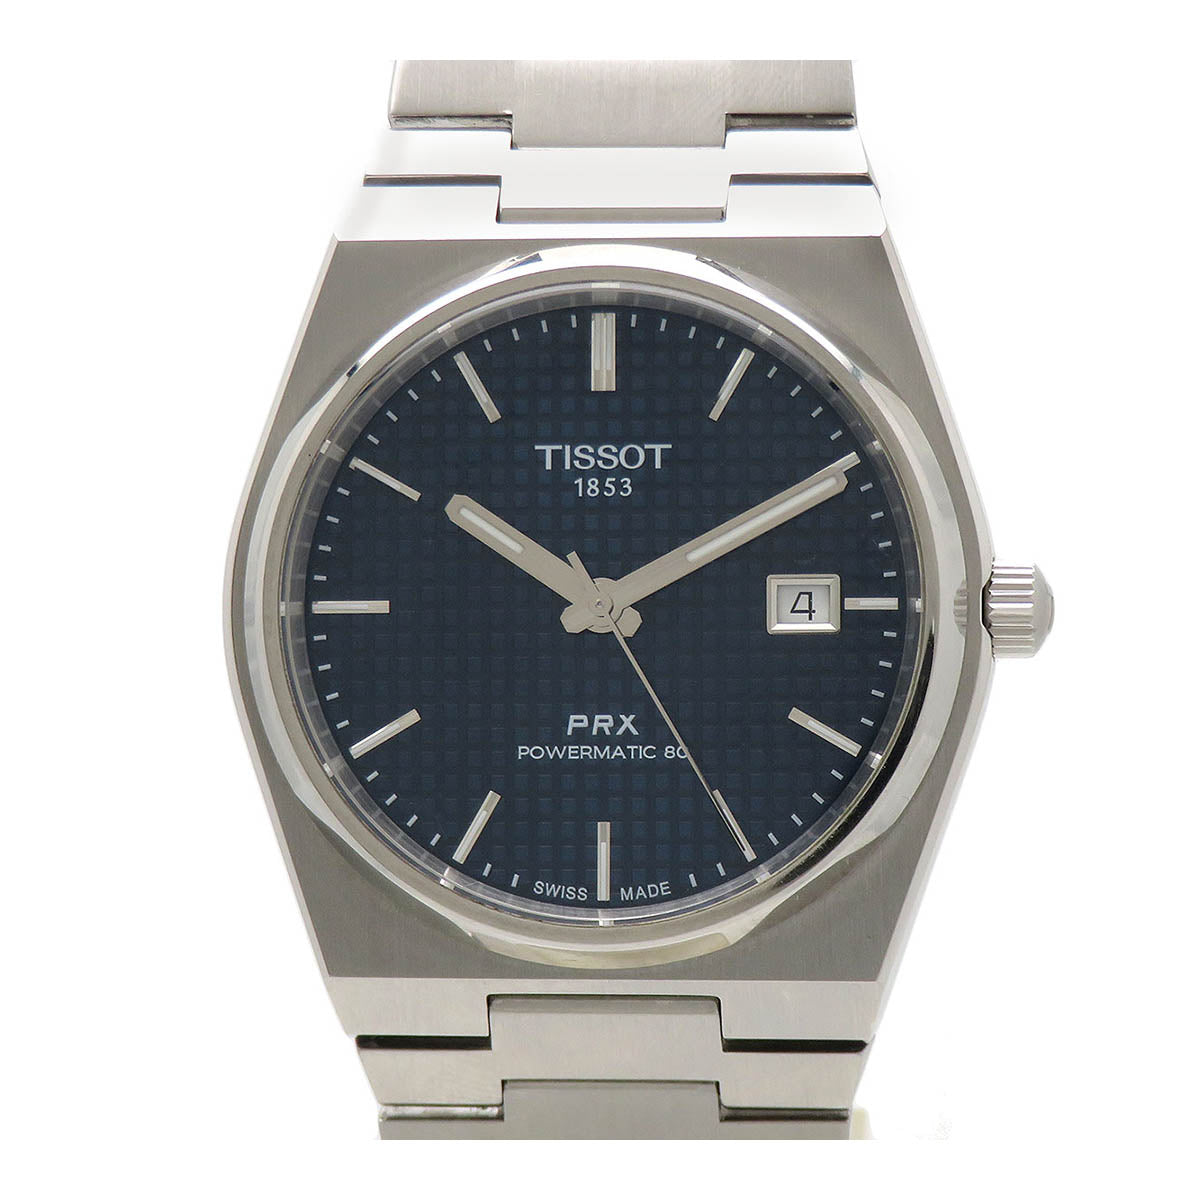 Automatic PRX Powermatic 80 Wrist Watch T137407A